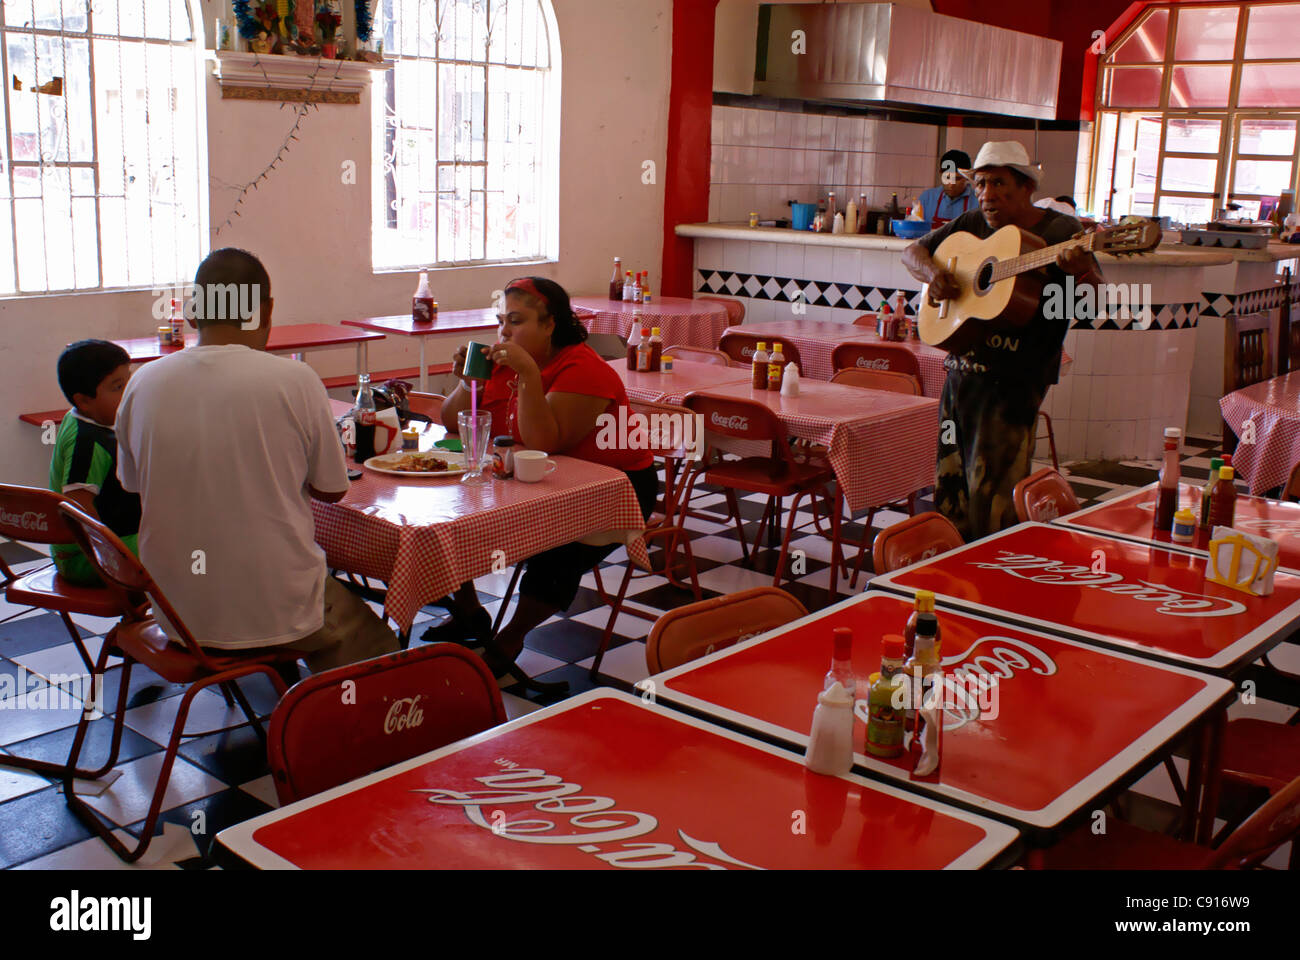 Guitar player singing in a traditional Mexican restaurant in the Mercado Pino Suarez market, Mazatlan, Sinaloa, Mexico Stock Photo